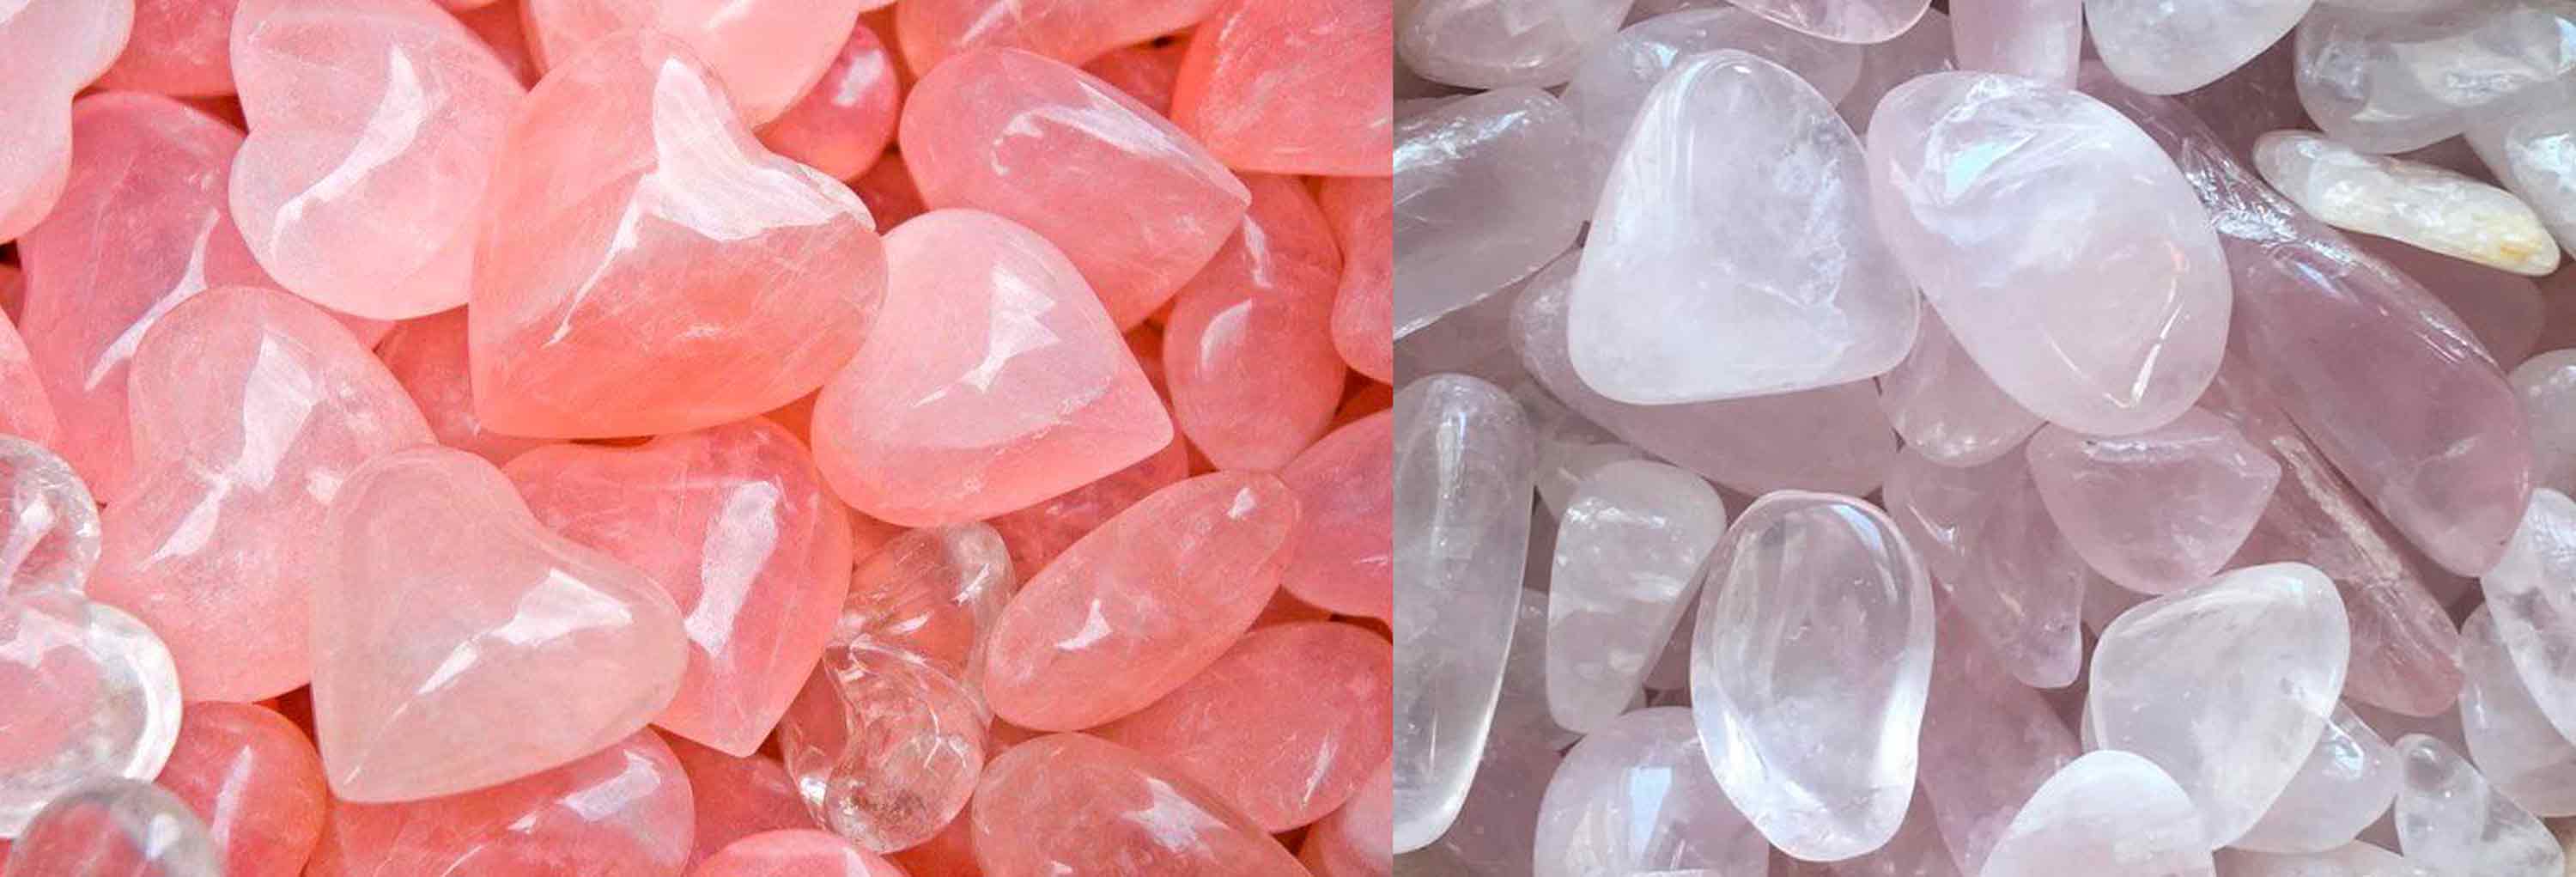 властивості каменю рожовевий кварц